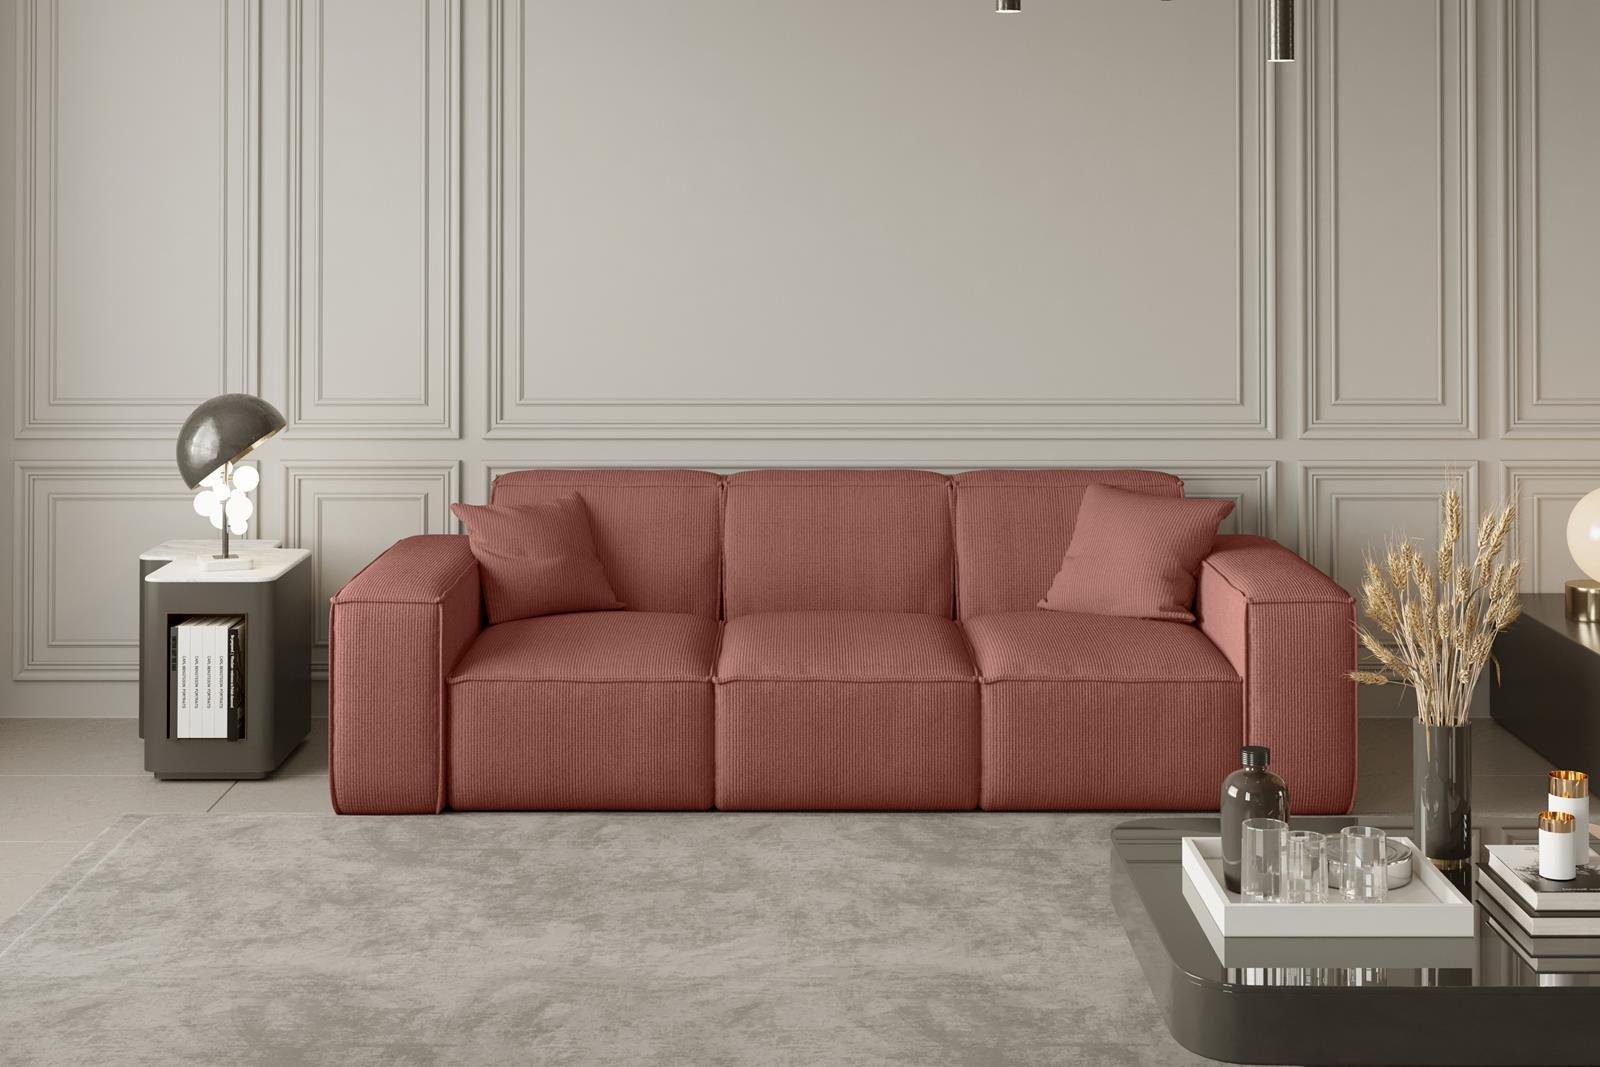 Beautysofa Sofa Lugano, 3-Sitzer Sofa oder Dreisitzer aus Stil, Wellenfedern inklusive im Cordstoff modernes Veloursstoff